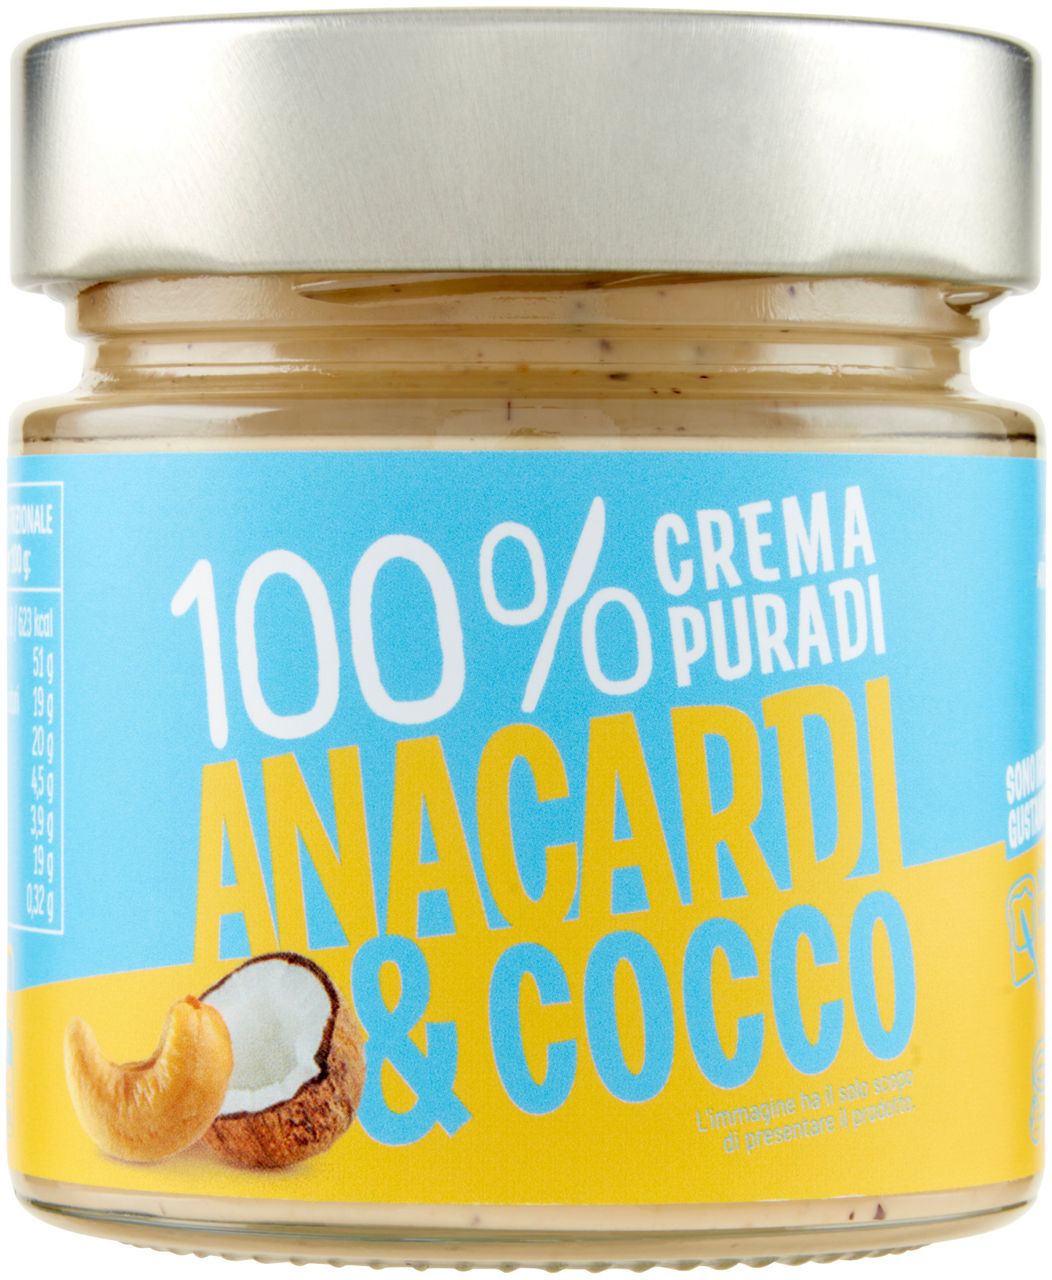 Crema pura 100% anacardi e cocco vaso g 175